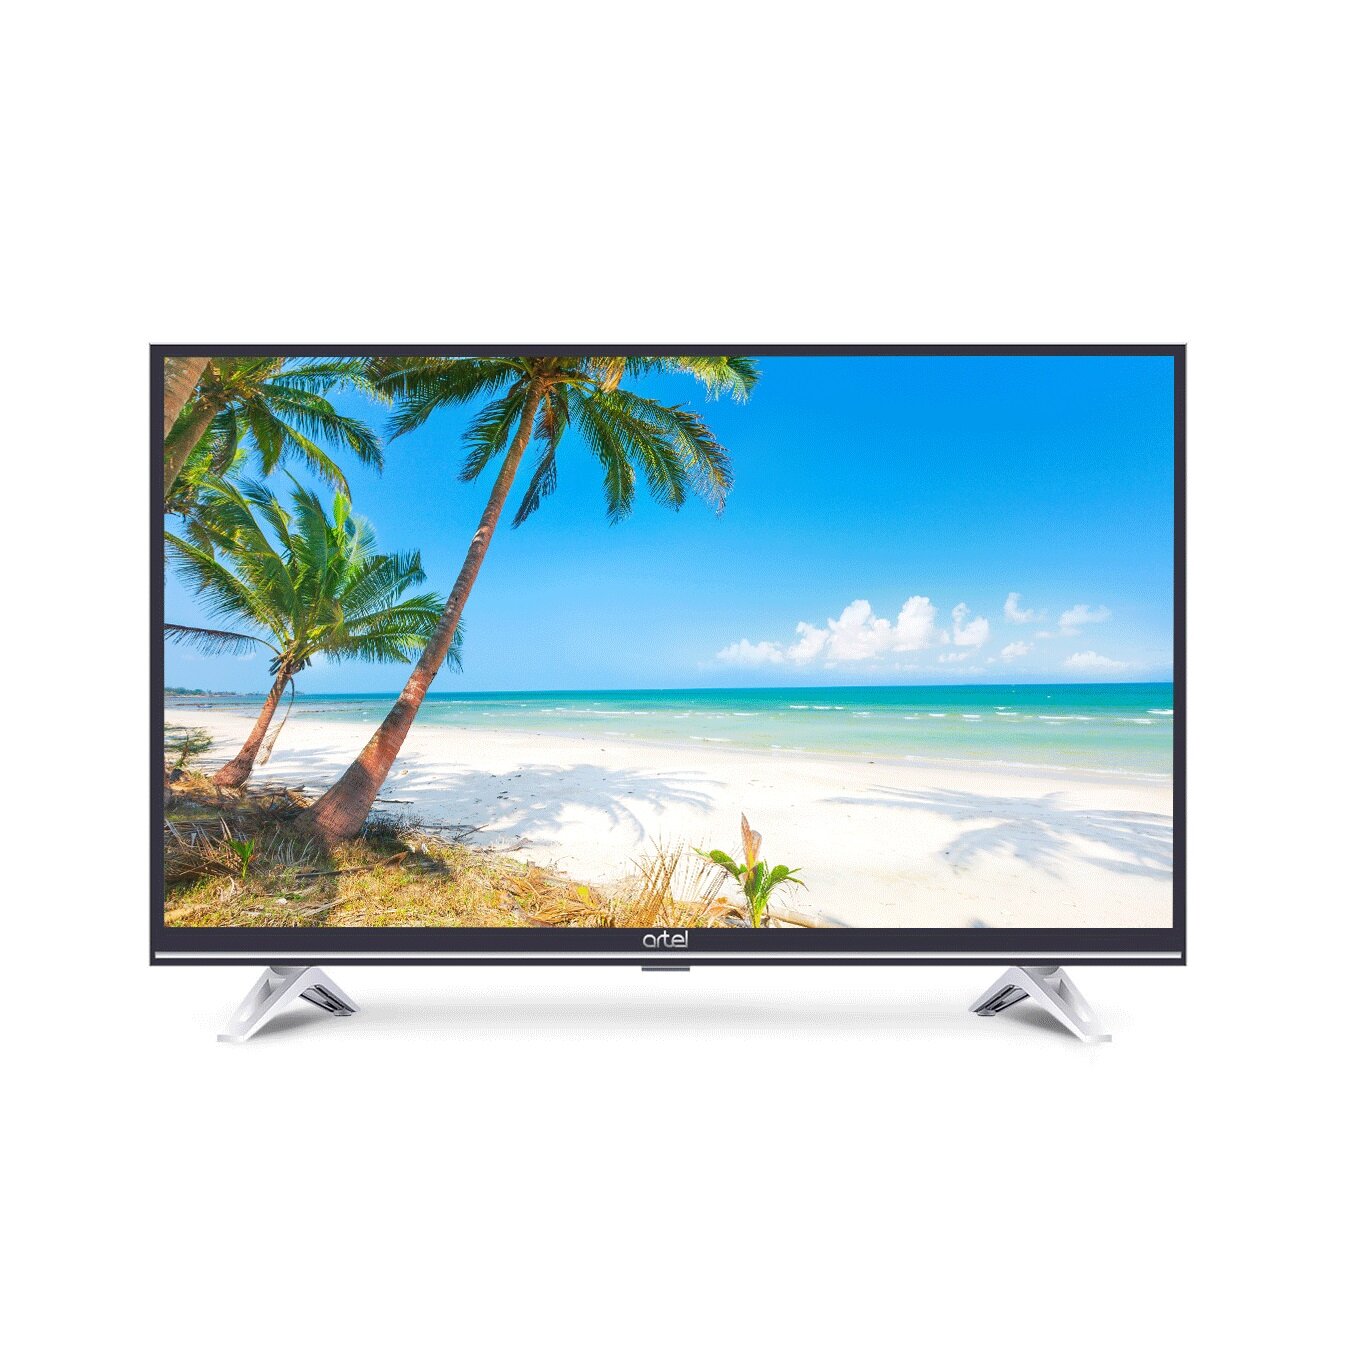 Купить Телевизор ARTEL UA32H1200 Smart чёрный в Крыму, цены, отзывы,характеристики